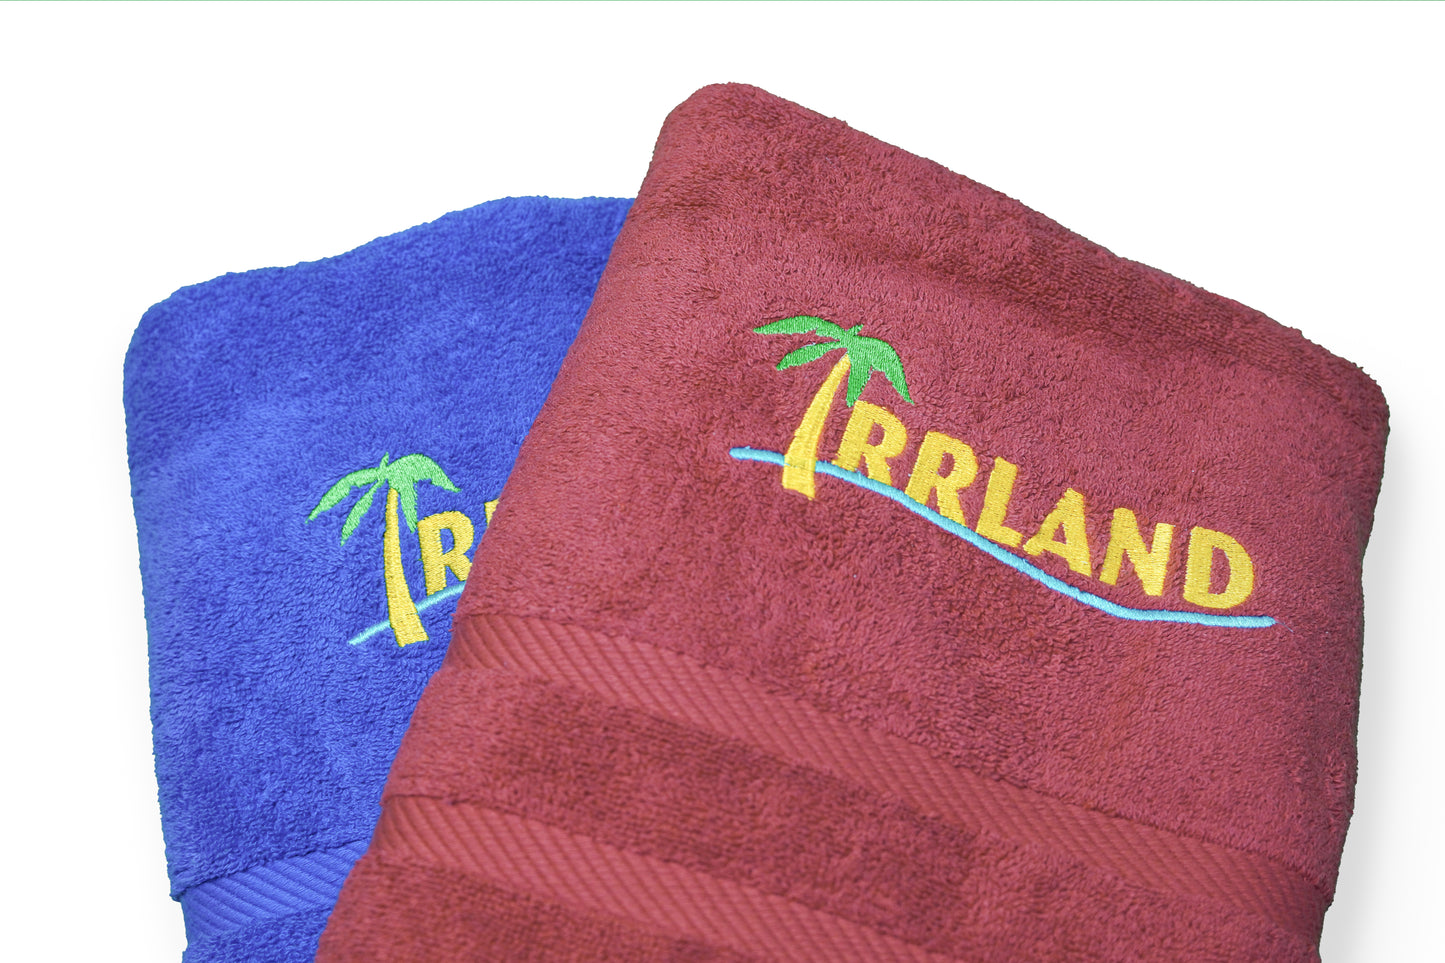 Irrland-handdoeken